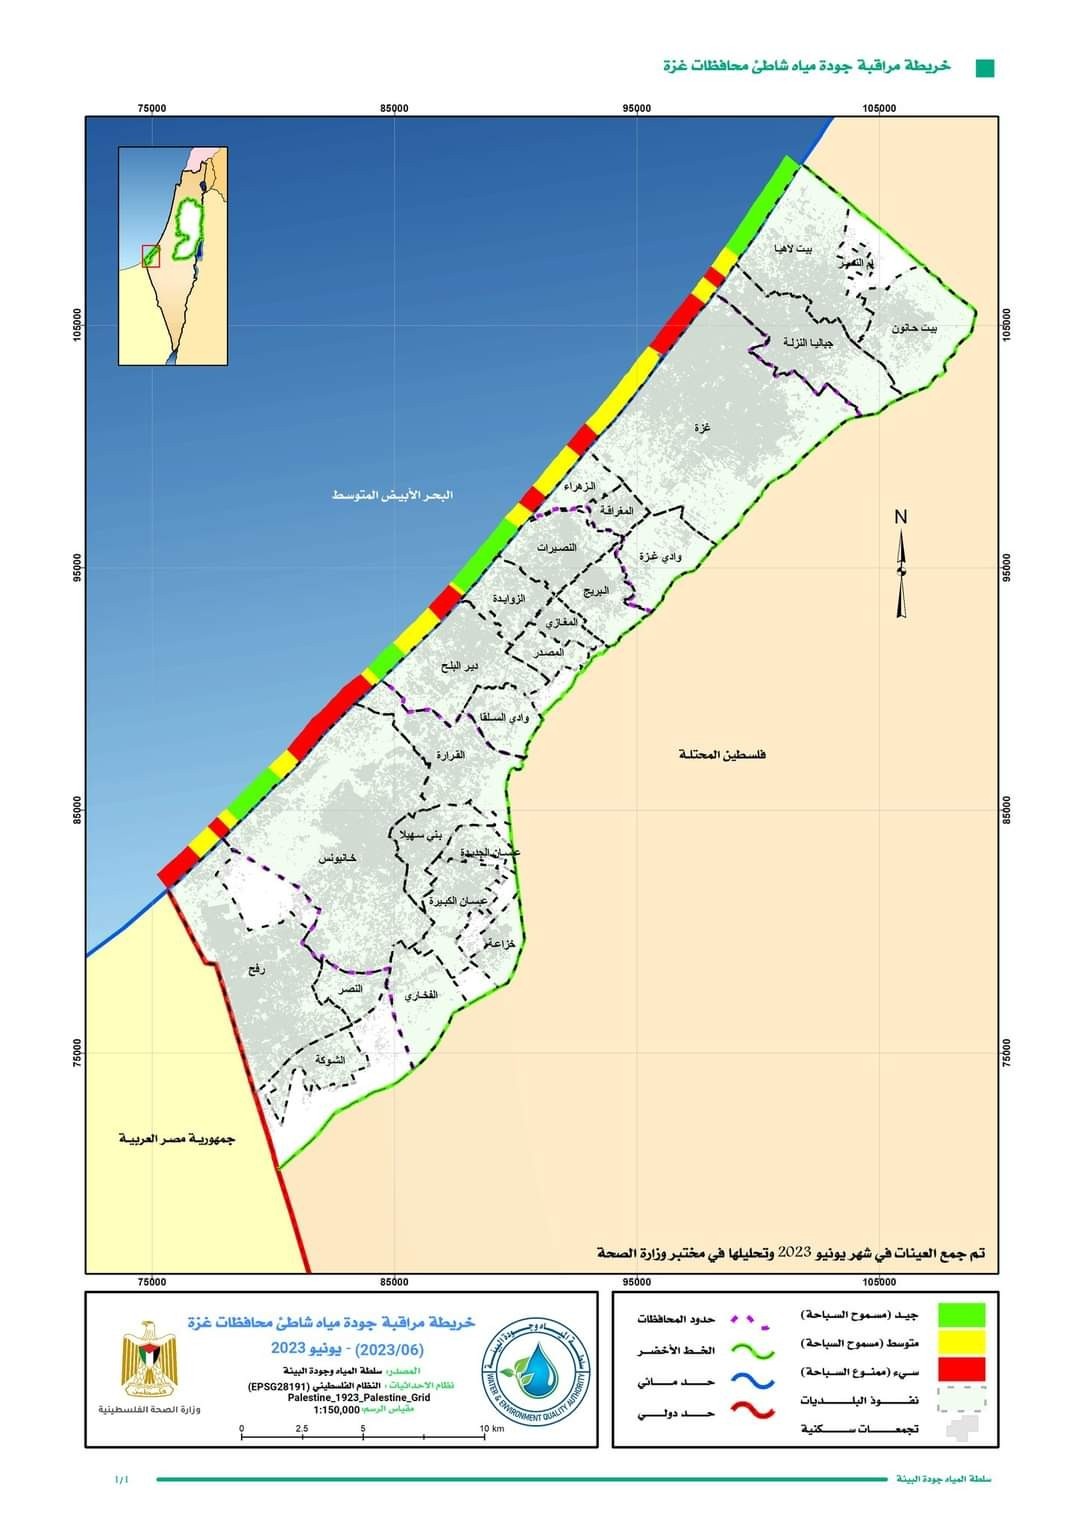 سلطة جودة البيئة تُحدد الأماكن الملوثة على شاطئ بحر غزّة